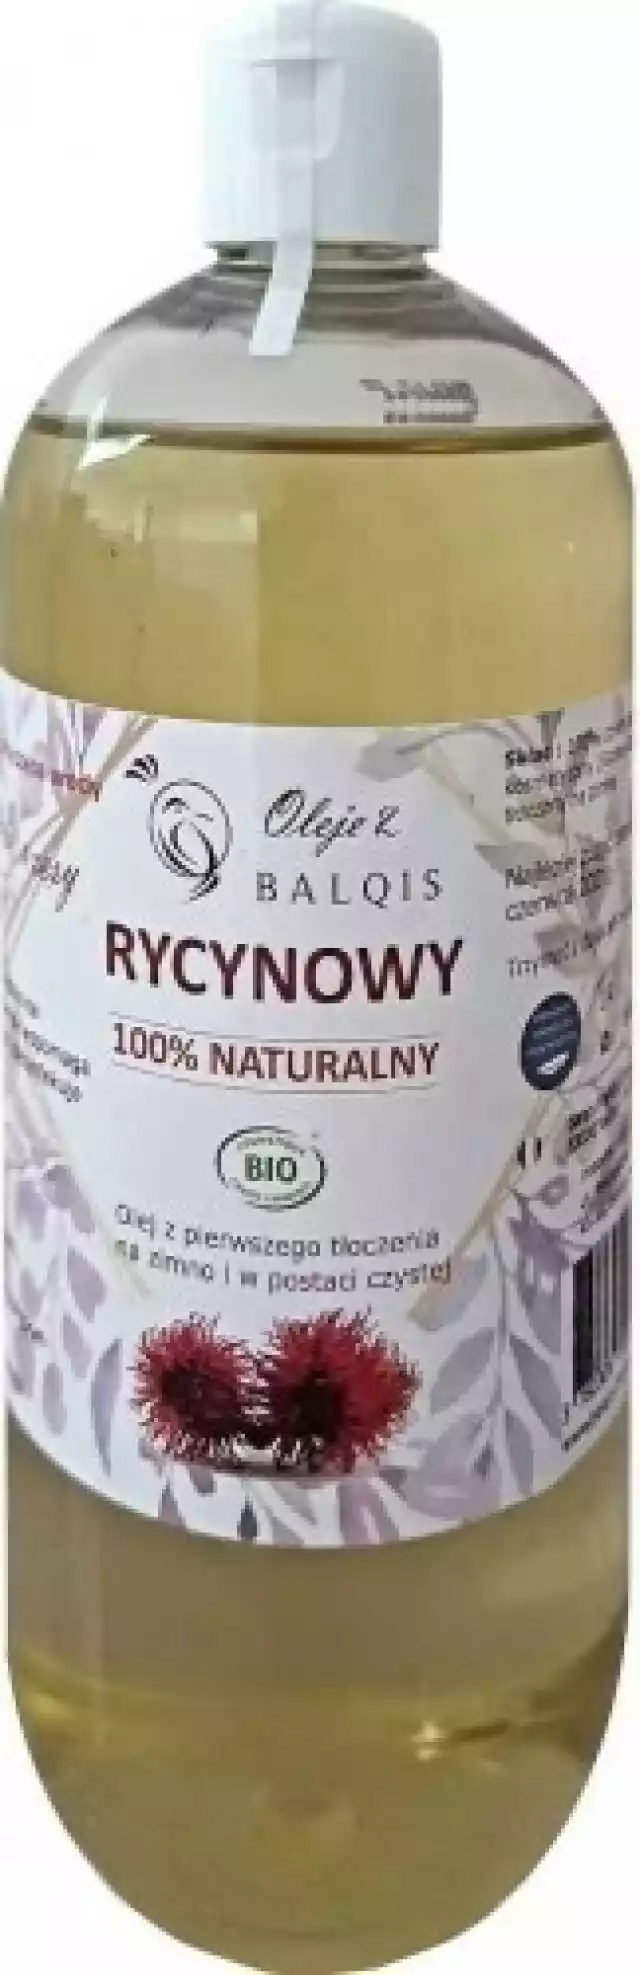 Olej Kosmetyczny Rycynowy Eco 500 Ml - Balqis